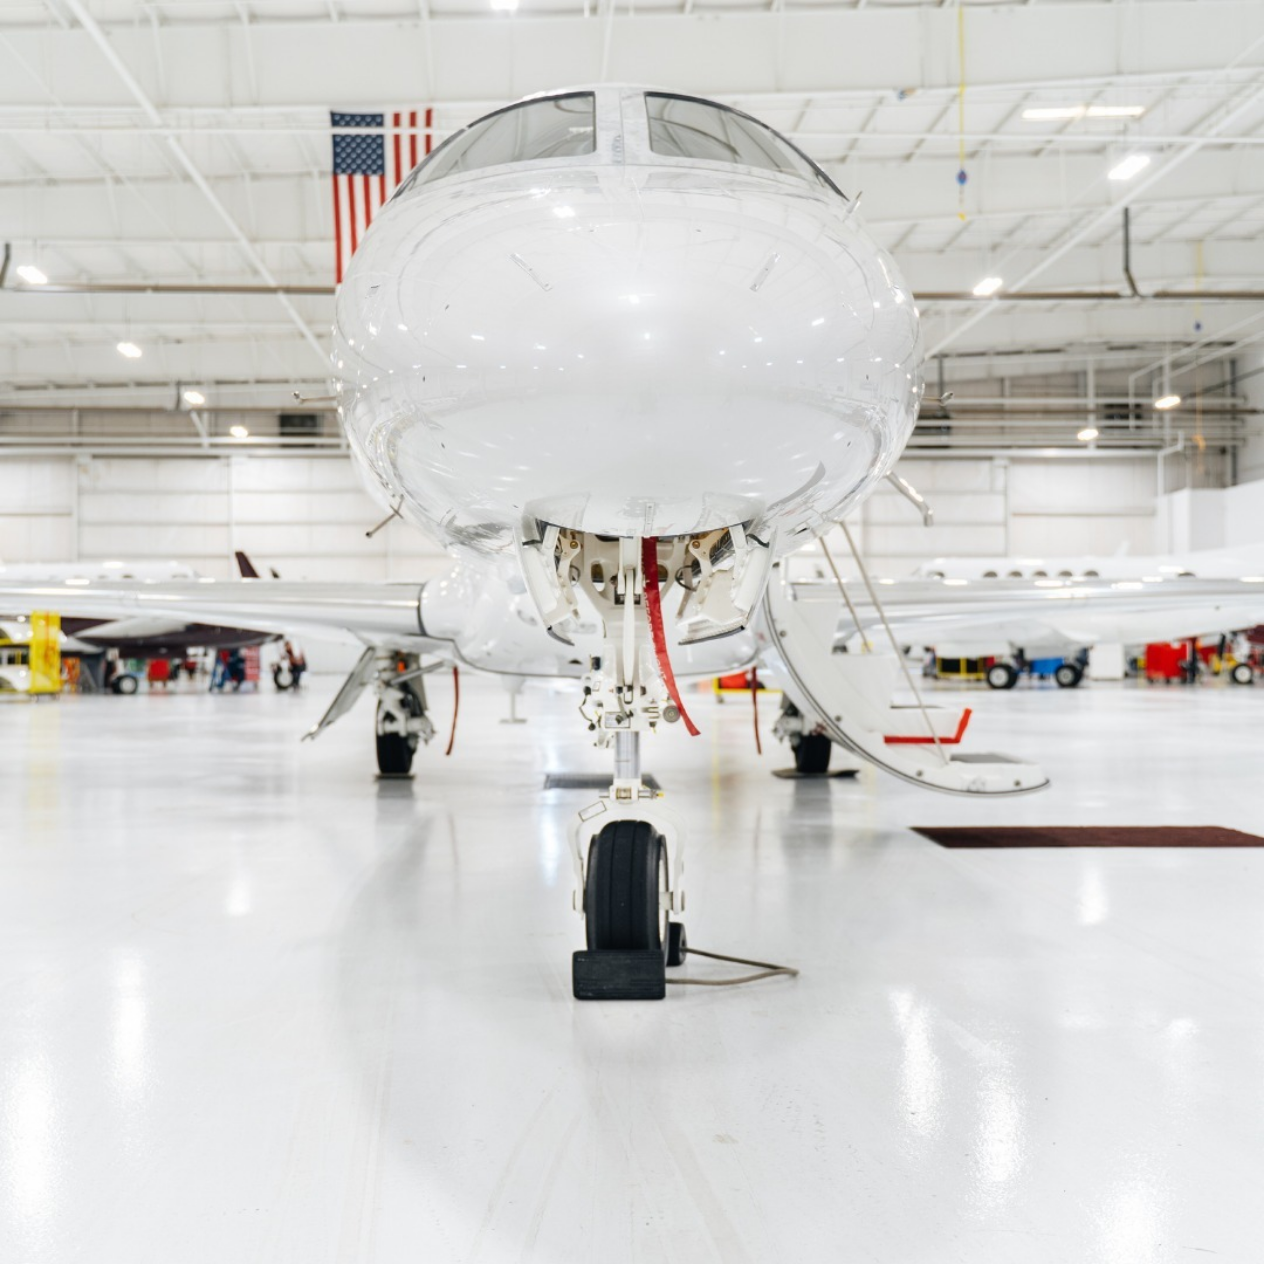 Private Jet In hangar KRBD Dallas Executive Airport